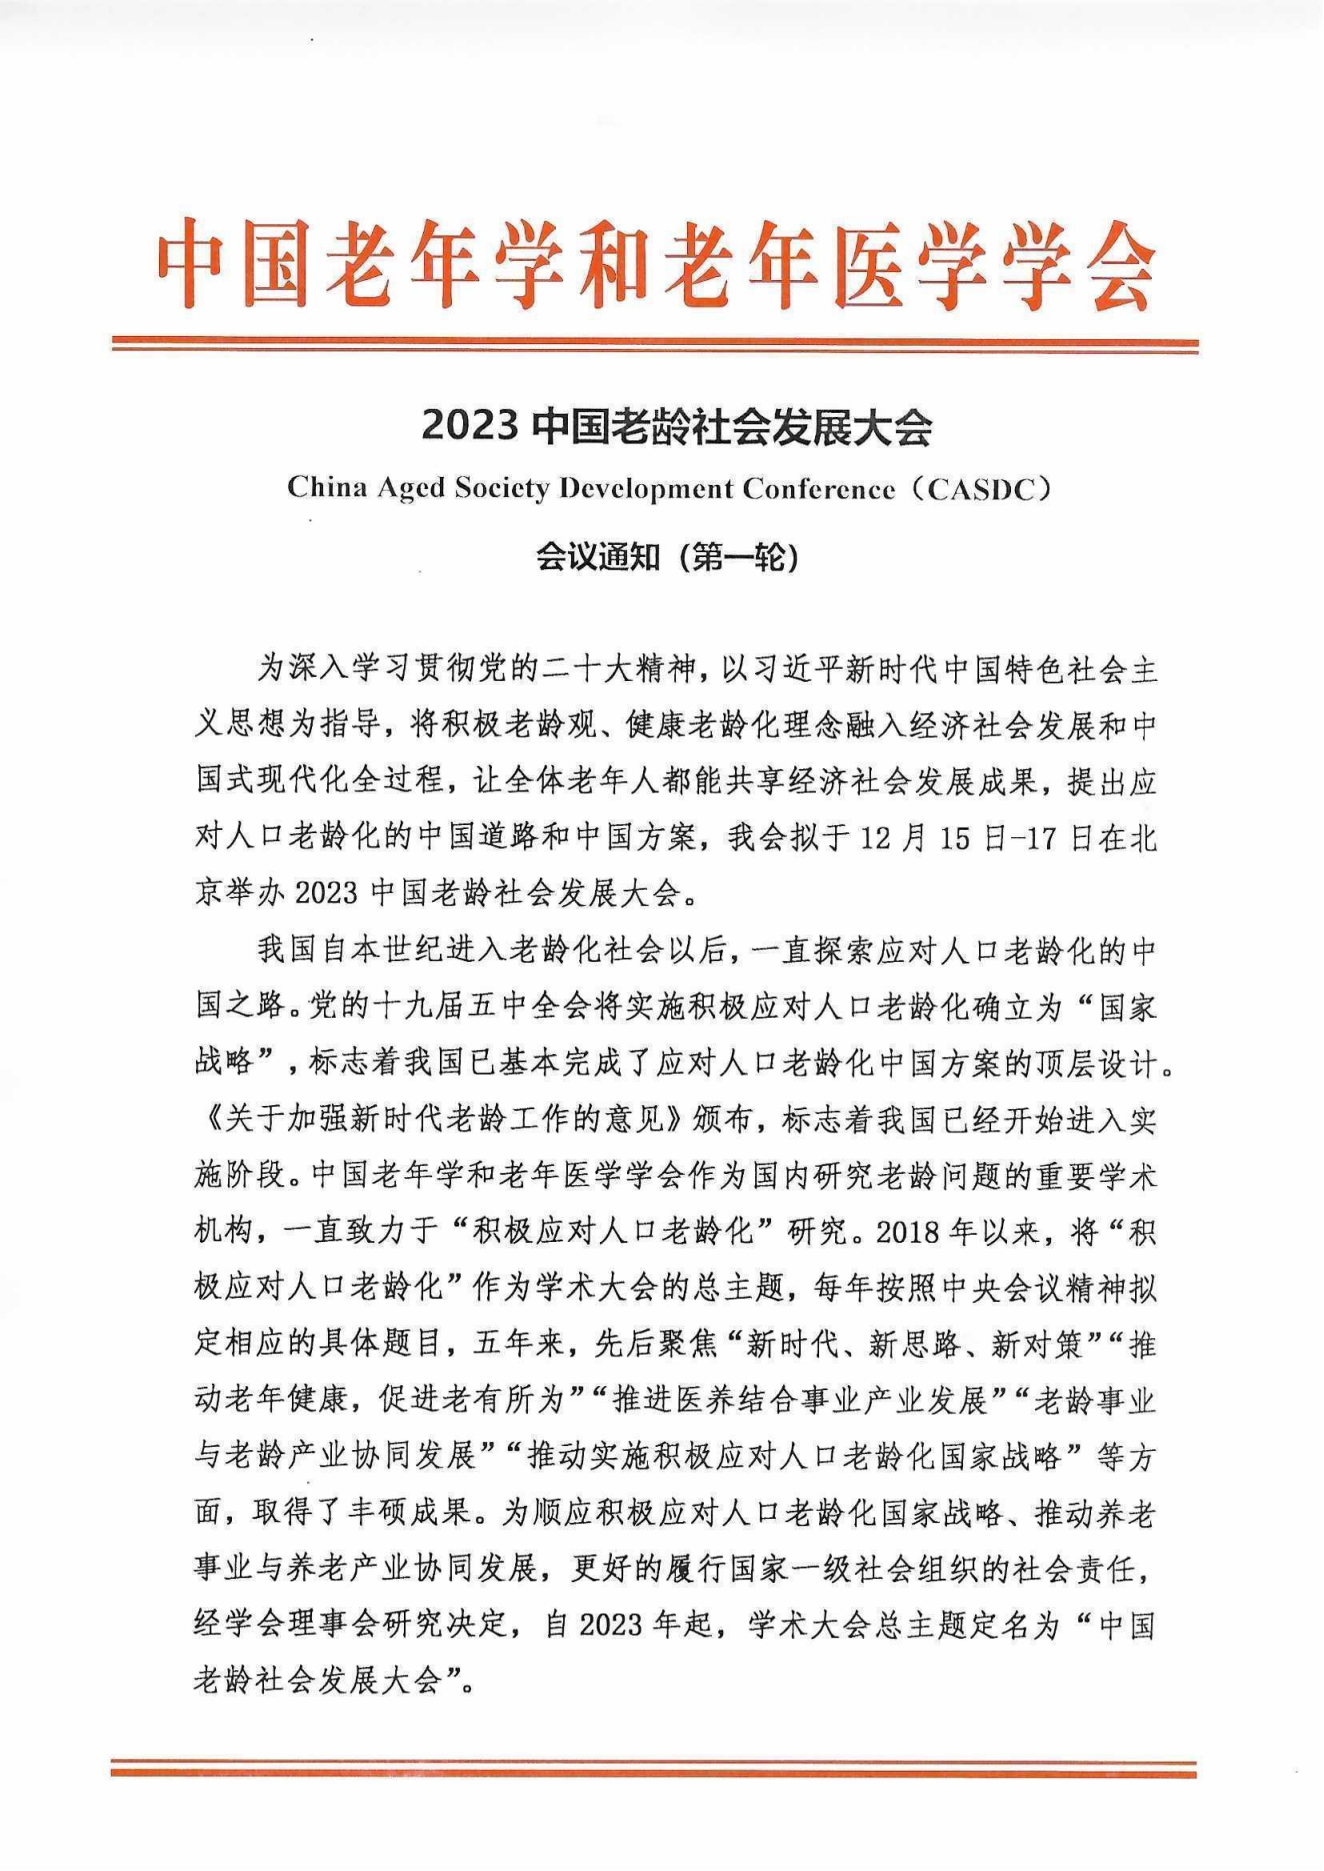 2023中国老龄社会发展大会（盖章件）2023年9月8日_00.png